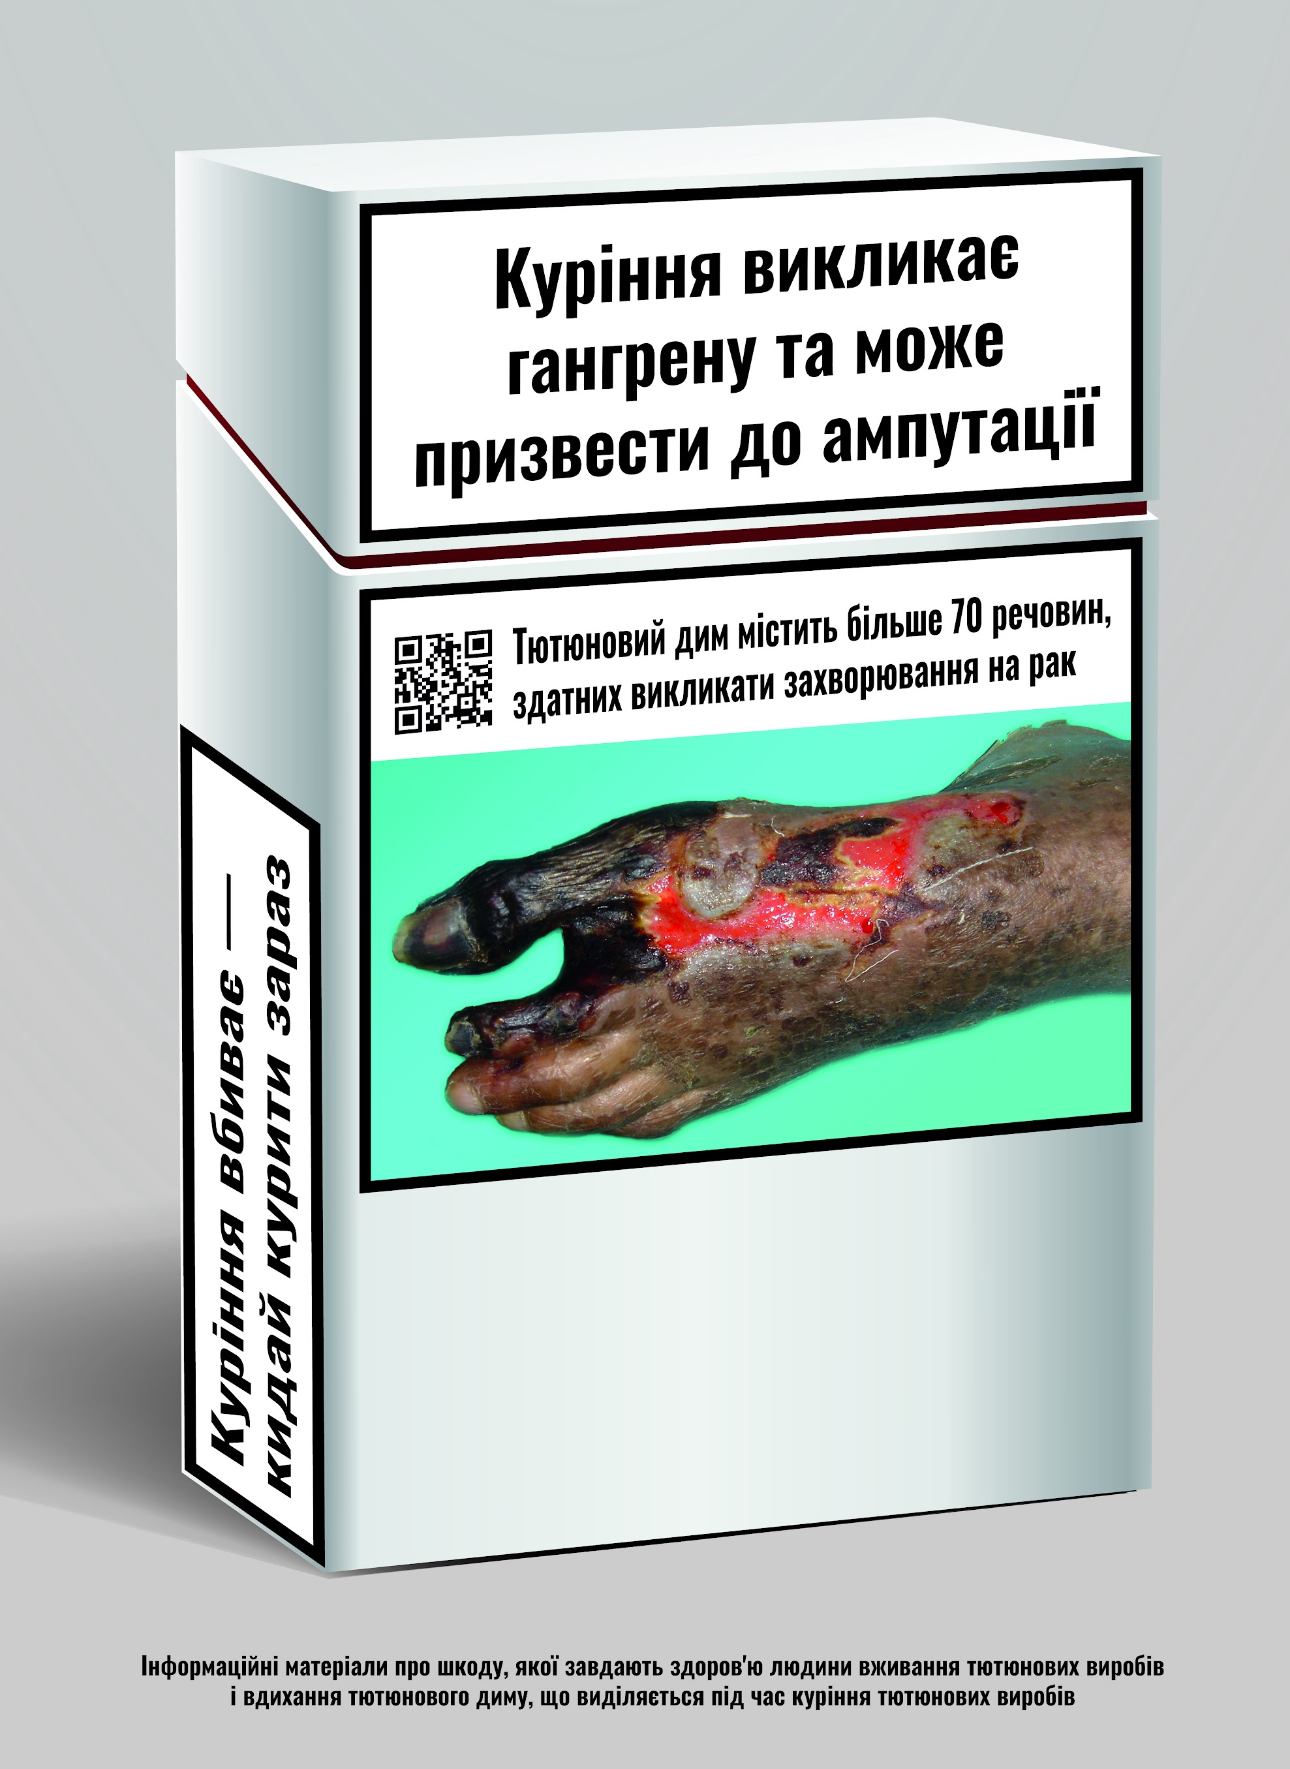 На пачках сигарет появились цветные фото болезней: “Украинцы станут меньше курить“ 